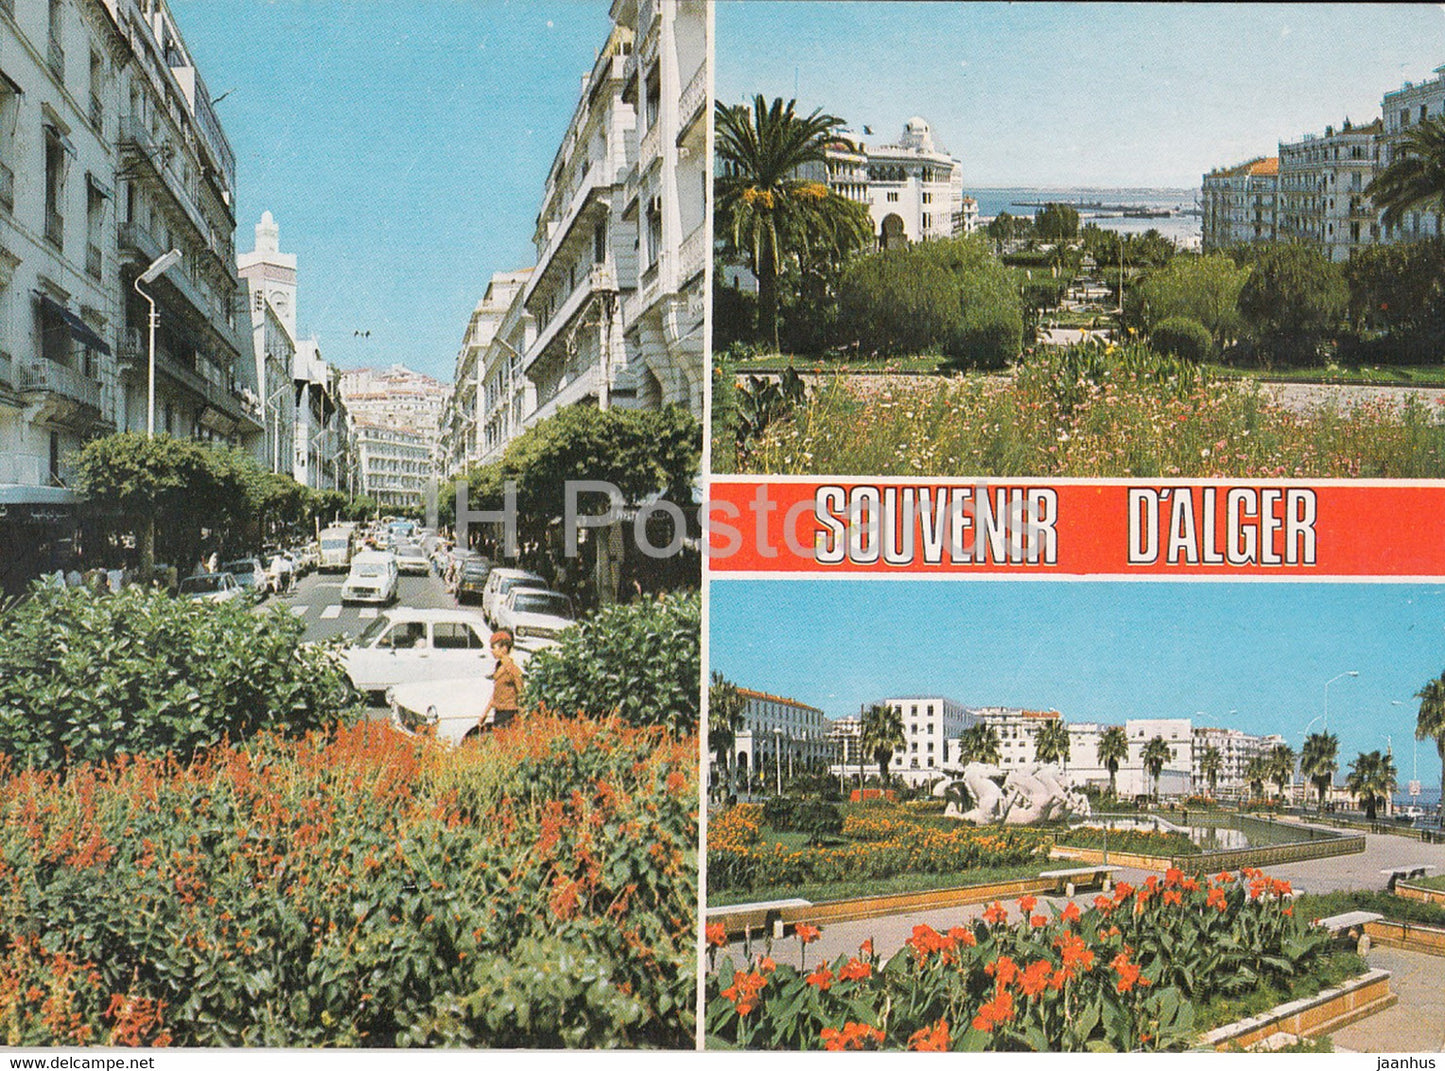 Souvenir d'Alger - street view - multiview - Algeria - used - JH Postcards